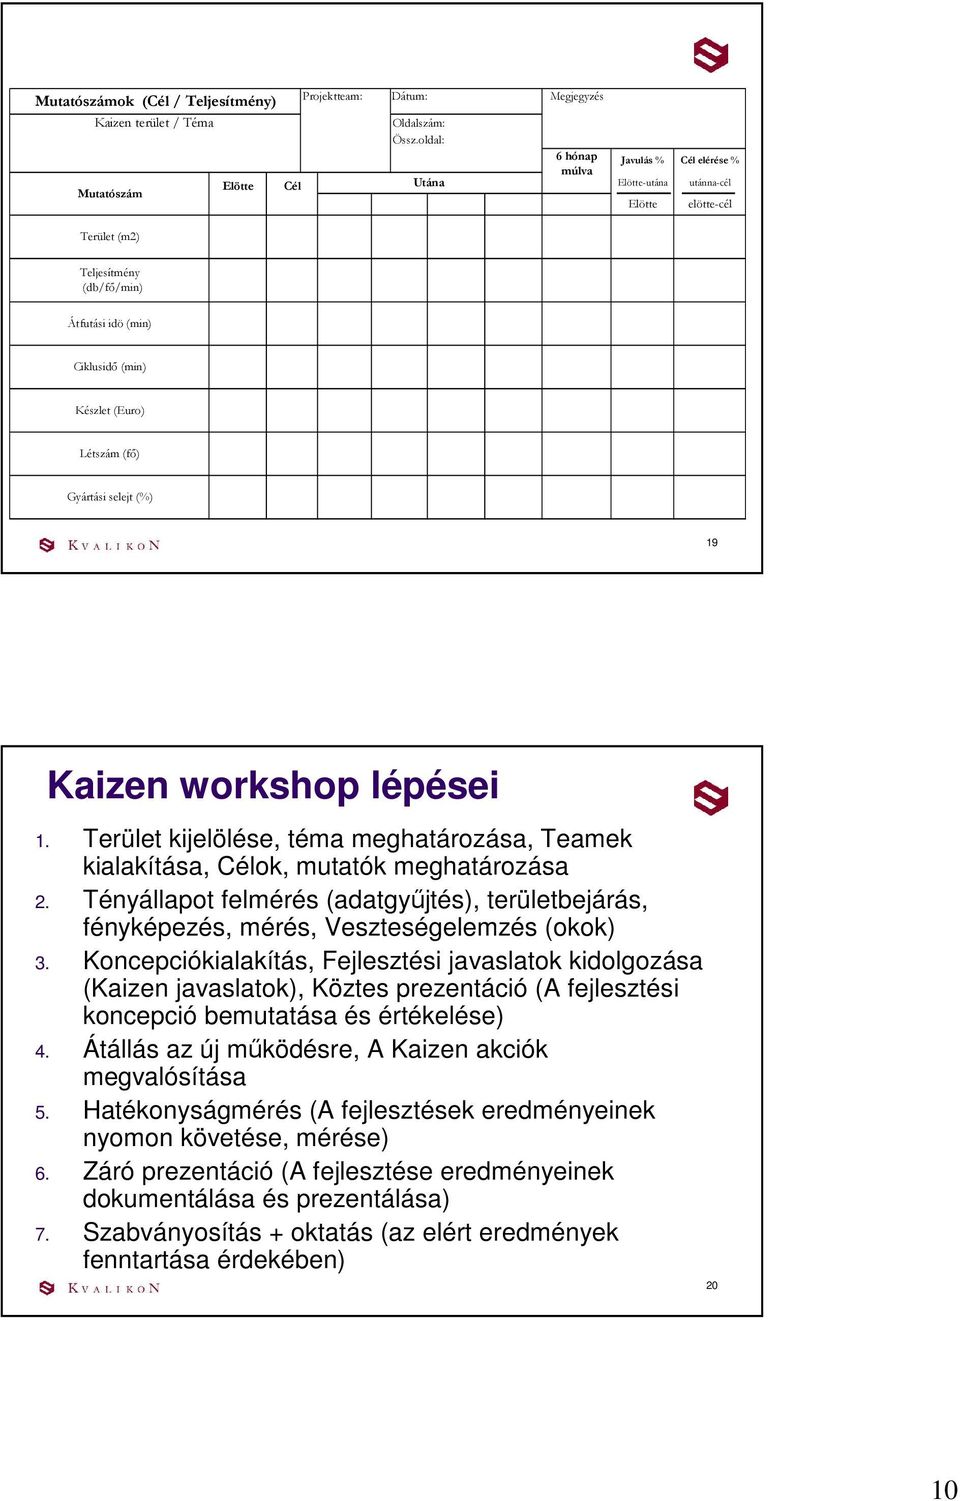 Gyártási selejt (%) 19 Kaizen workshop lépései 1. Terület kijelölése, téma meghatározása, Teamek kialakítása, Célok, mutatók meghatározása 2.